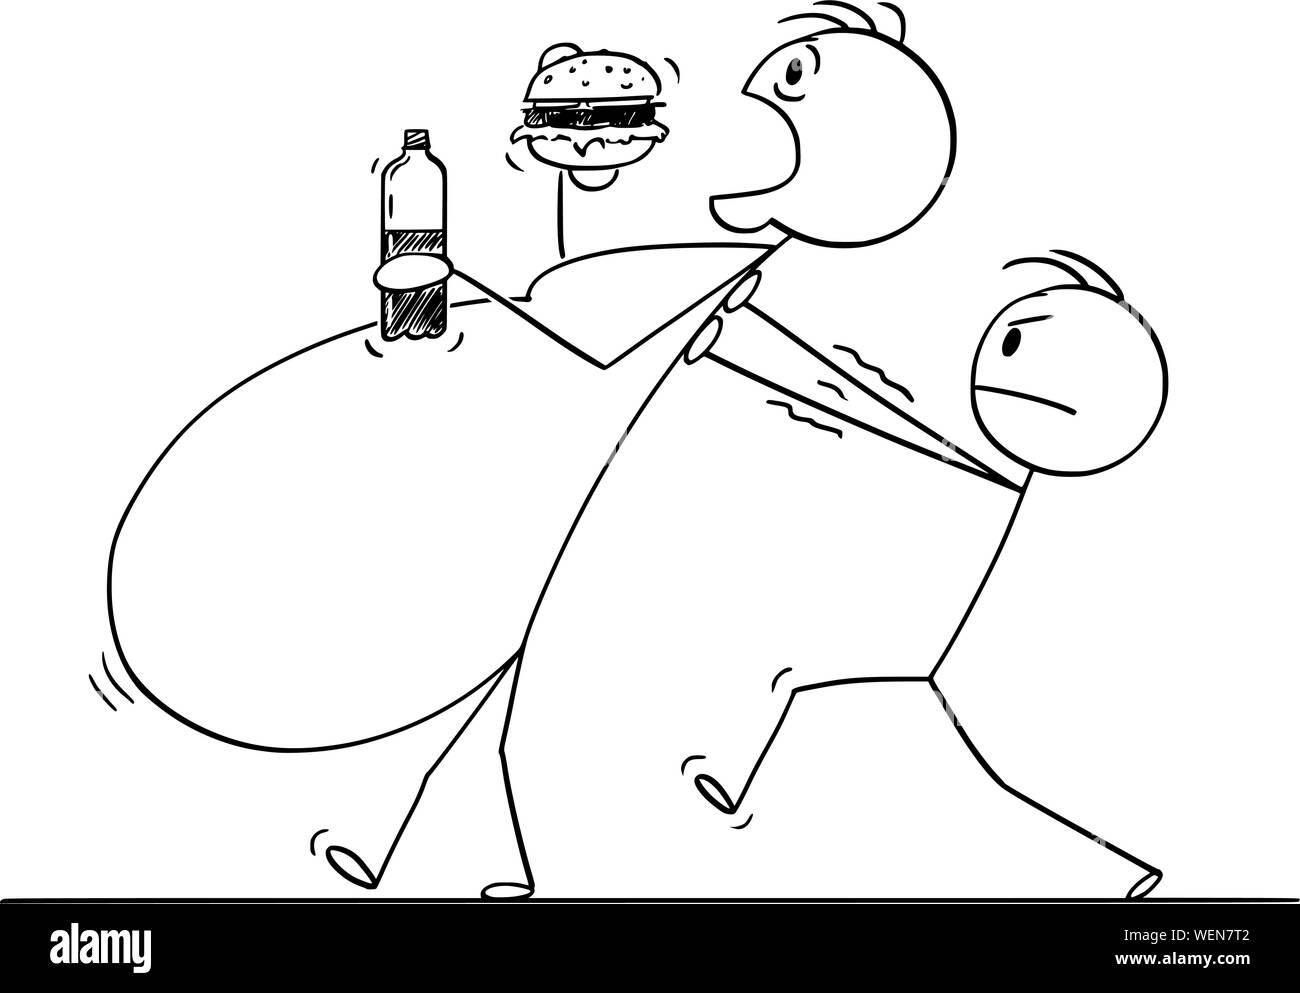 Vector cartoon stick figure dessin illustration conceptuelle de l'embonpoint, d'obésité morbide ou fat man eating aliments malsains tandis qu'un autre homme n'est l'aidant à marcher. Illustration de Vecteur